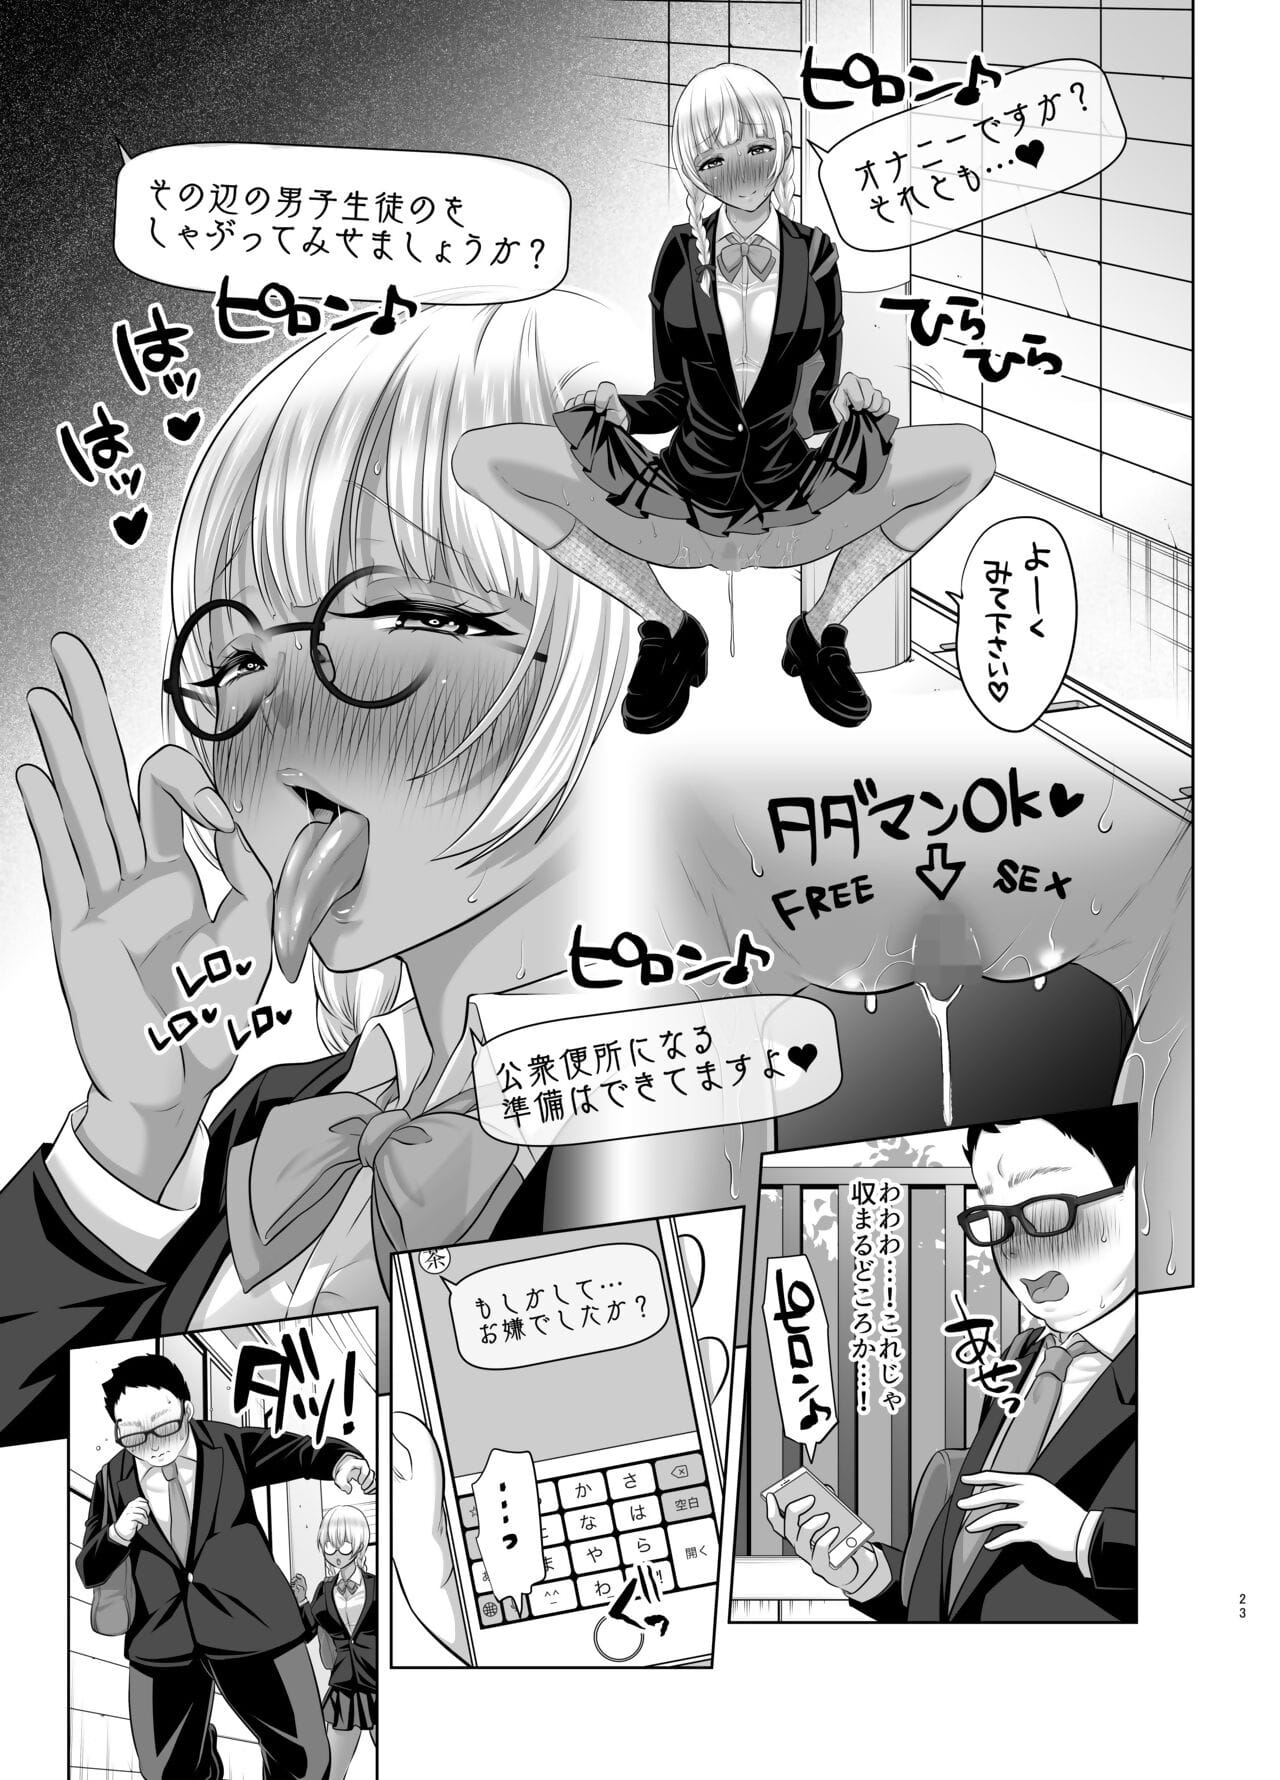 kobihetsurawasetekudasai butaosama. page 1